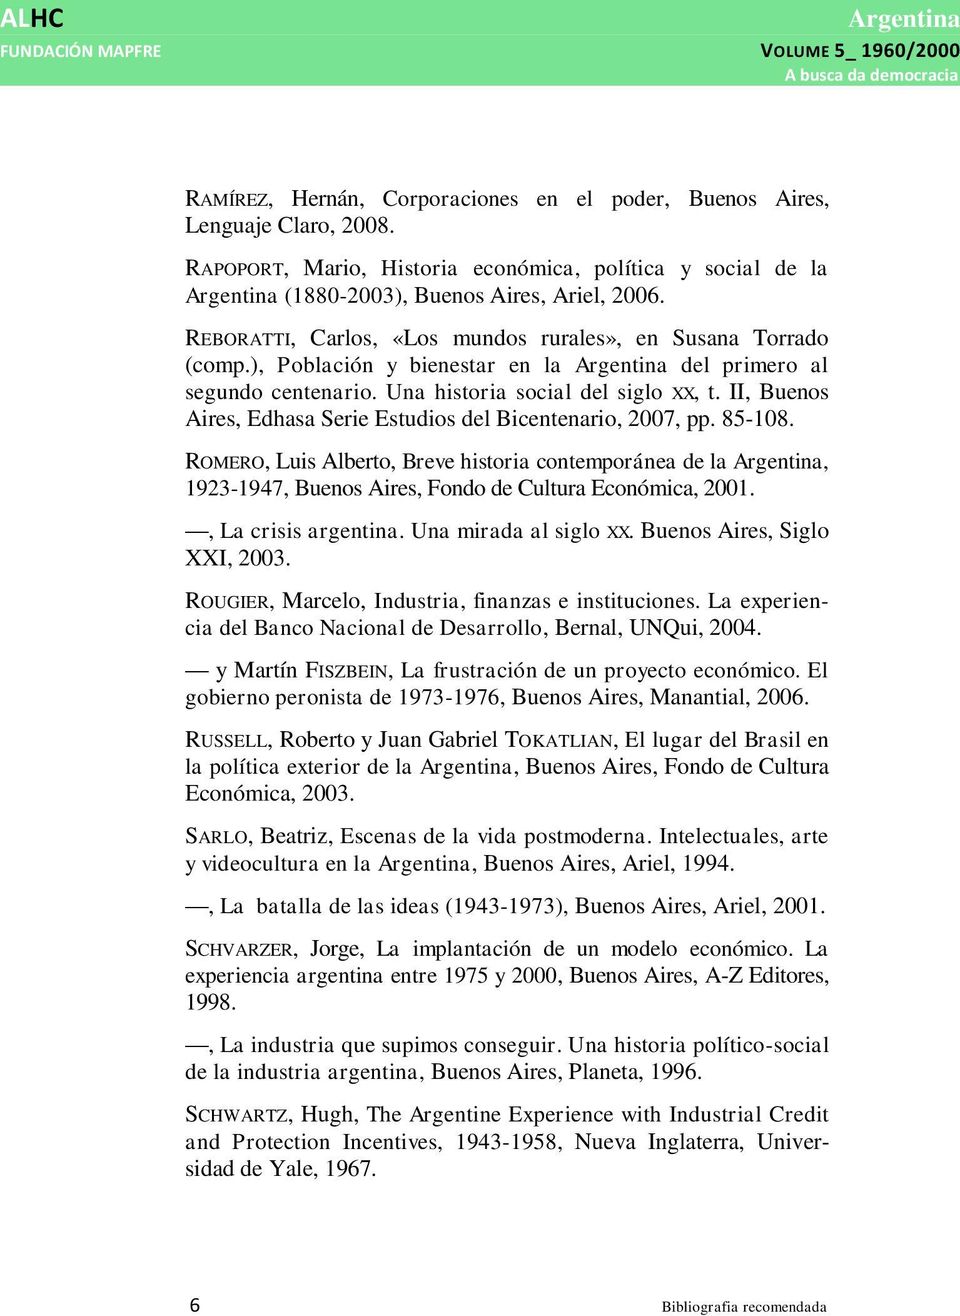 II, Buenos Aires, Edhasa Serie Estudios del Bicentenario, 2007, pp. 85-108. ROMERO, Luis Alberto, Breve historia contemporánea de la, 1923-1947, Buenos Aires, Fondo de Cultura Económica, 2001.